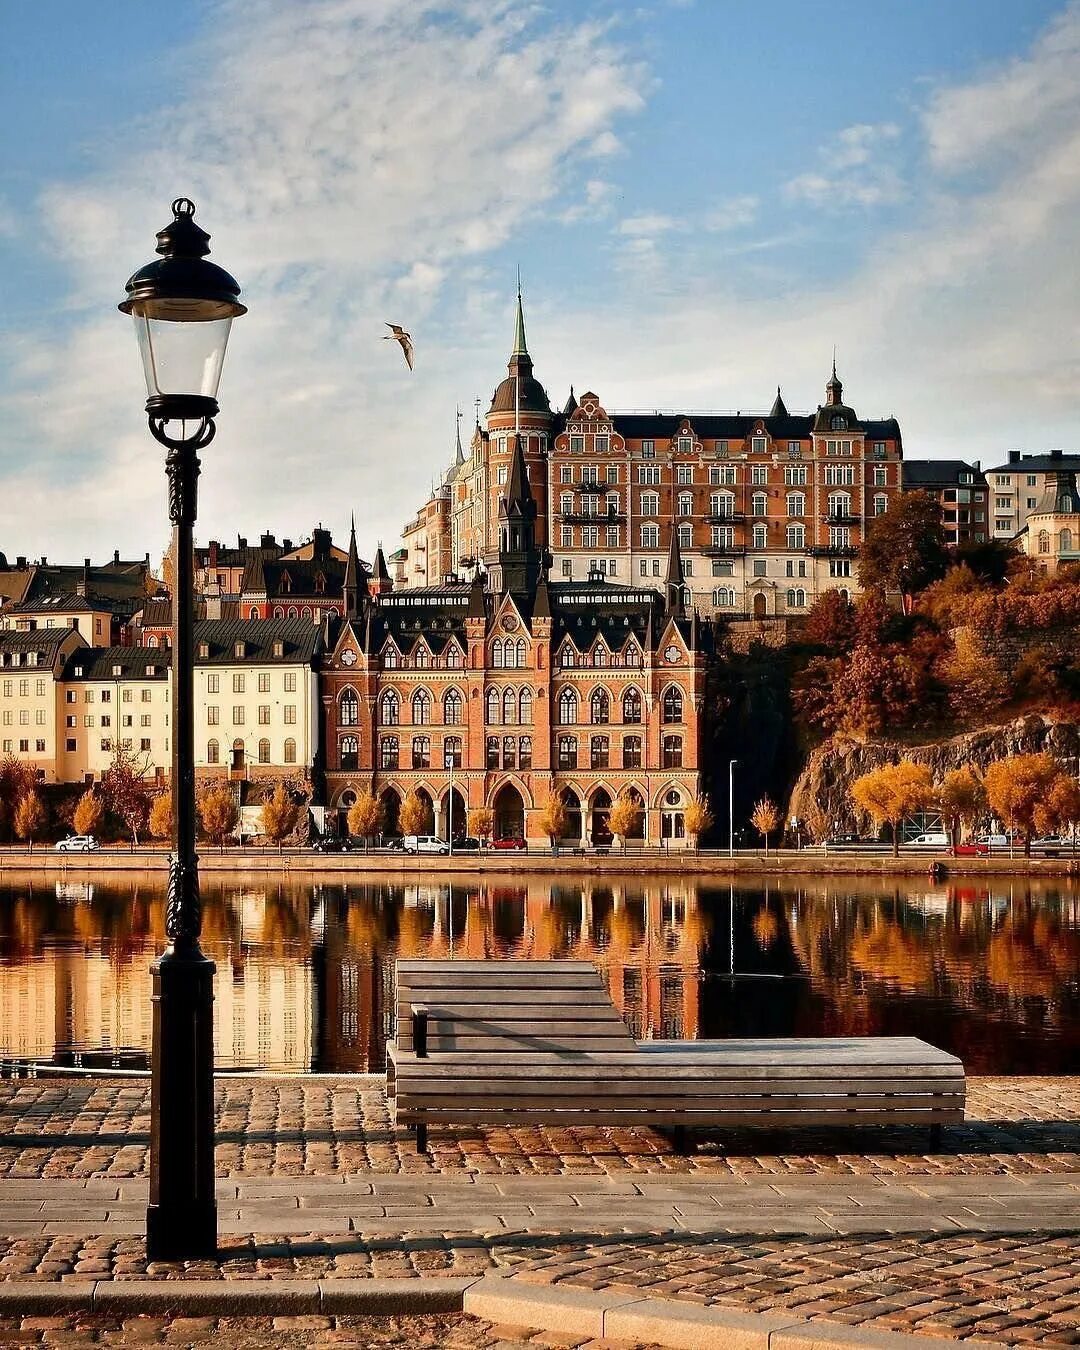 Швеция столица какой страны. Швеция Sweden Стокгольм. Швеция столица Стокгольм. Стокгольм столица Швеции достопримечательности. Стокгольм панорама.